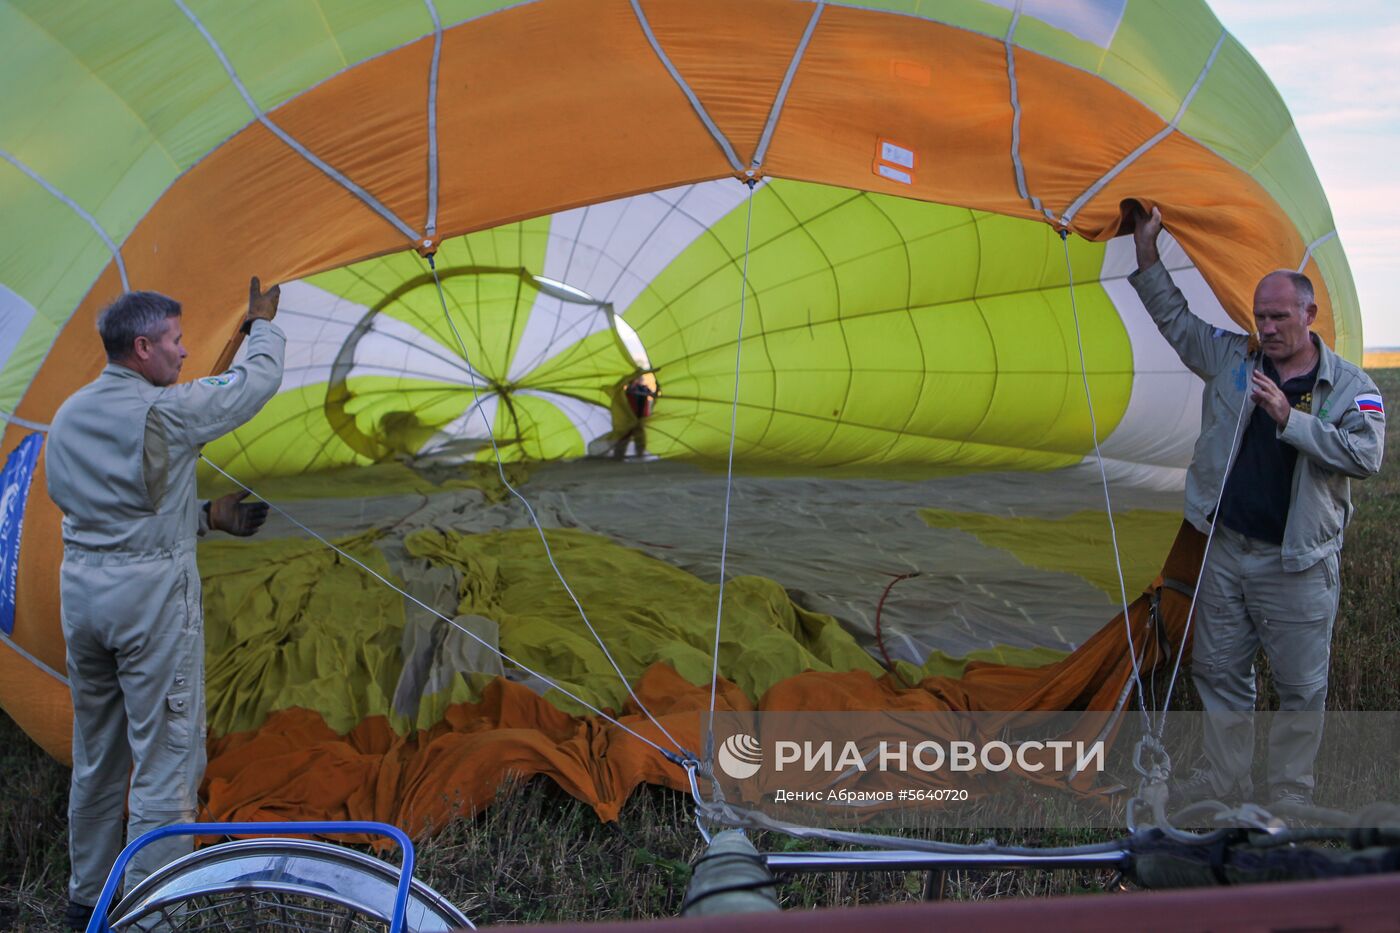 Российский фестиваль воздухоплавания в Ставрополье